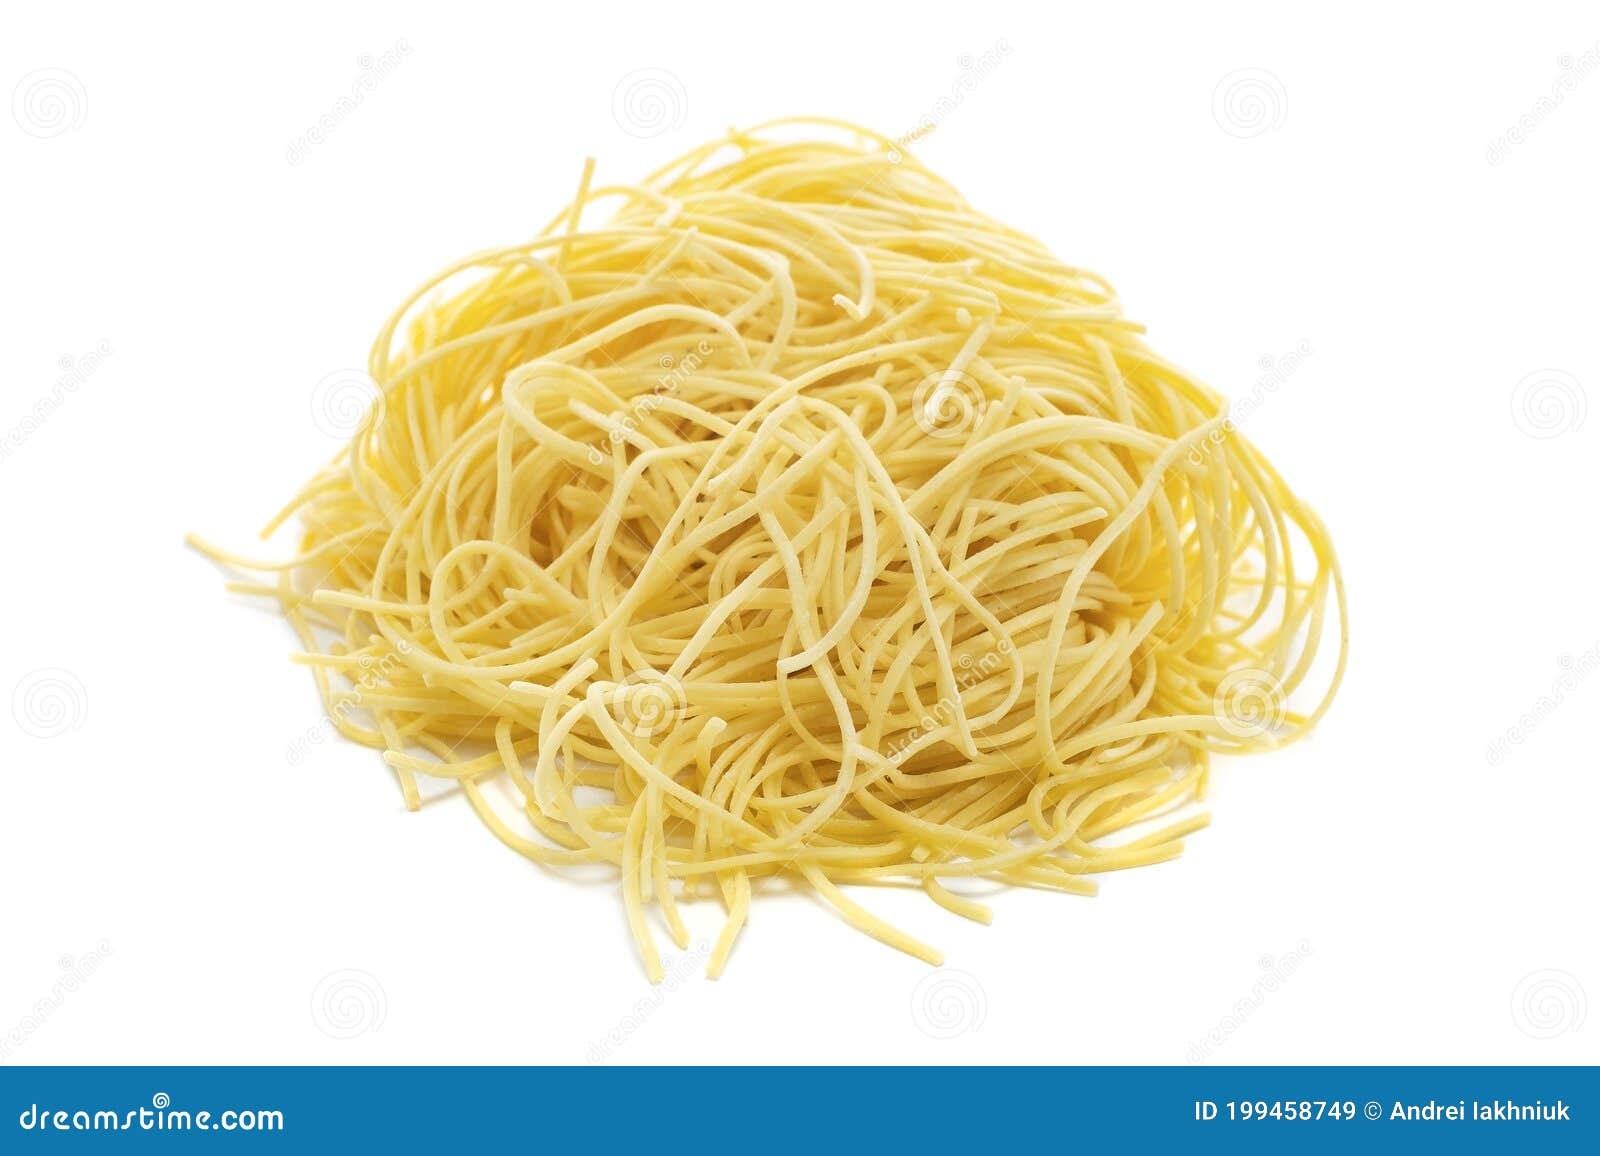 Naar de waarheid toevoegen Mondstuk Fresh Uncooked Capellini Pasta Isolated on a White Background Stock Image -  Image of ingredient, natural: 199458749